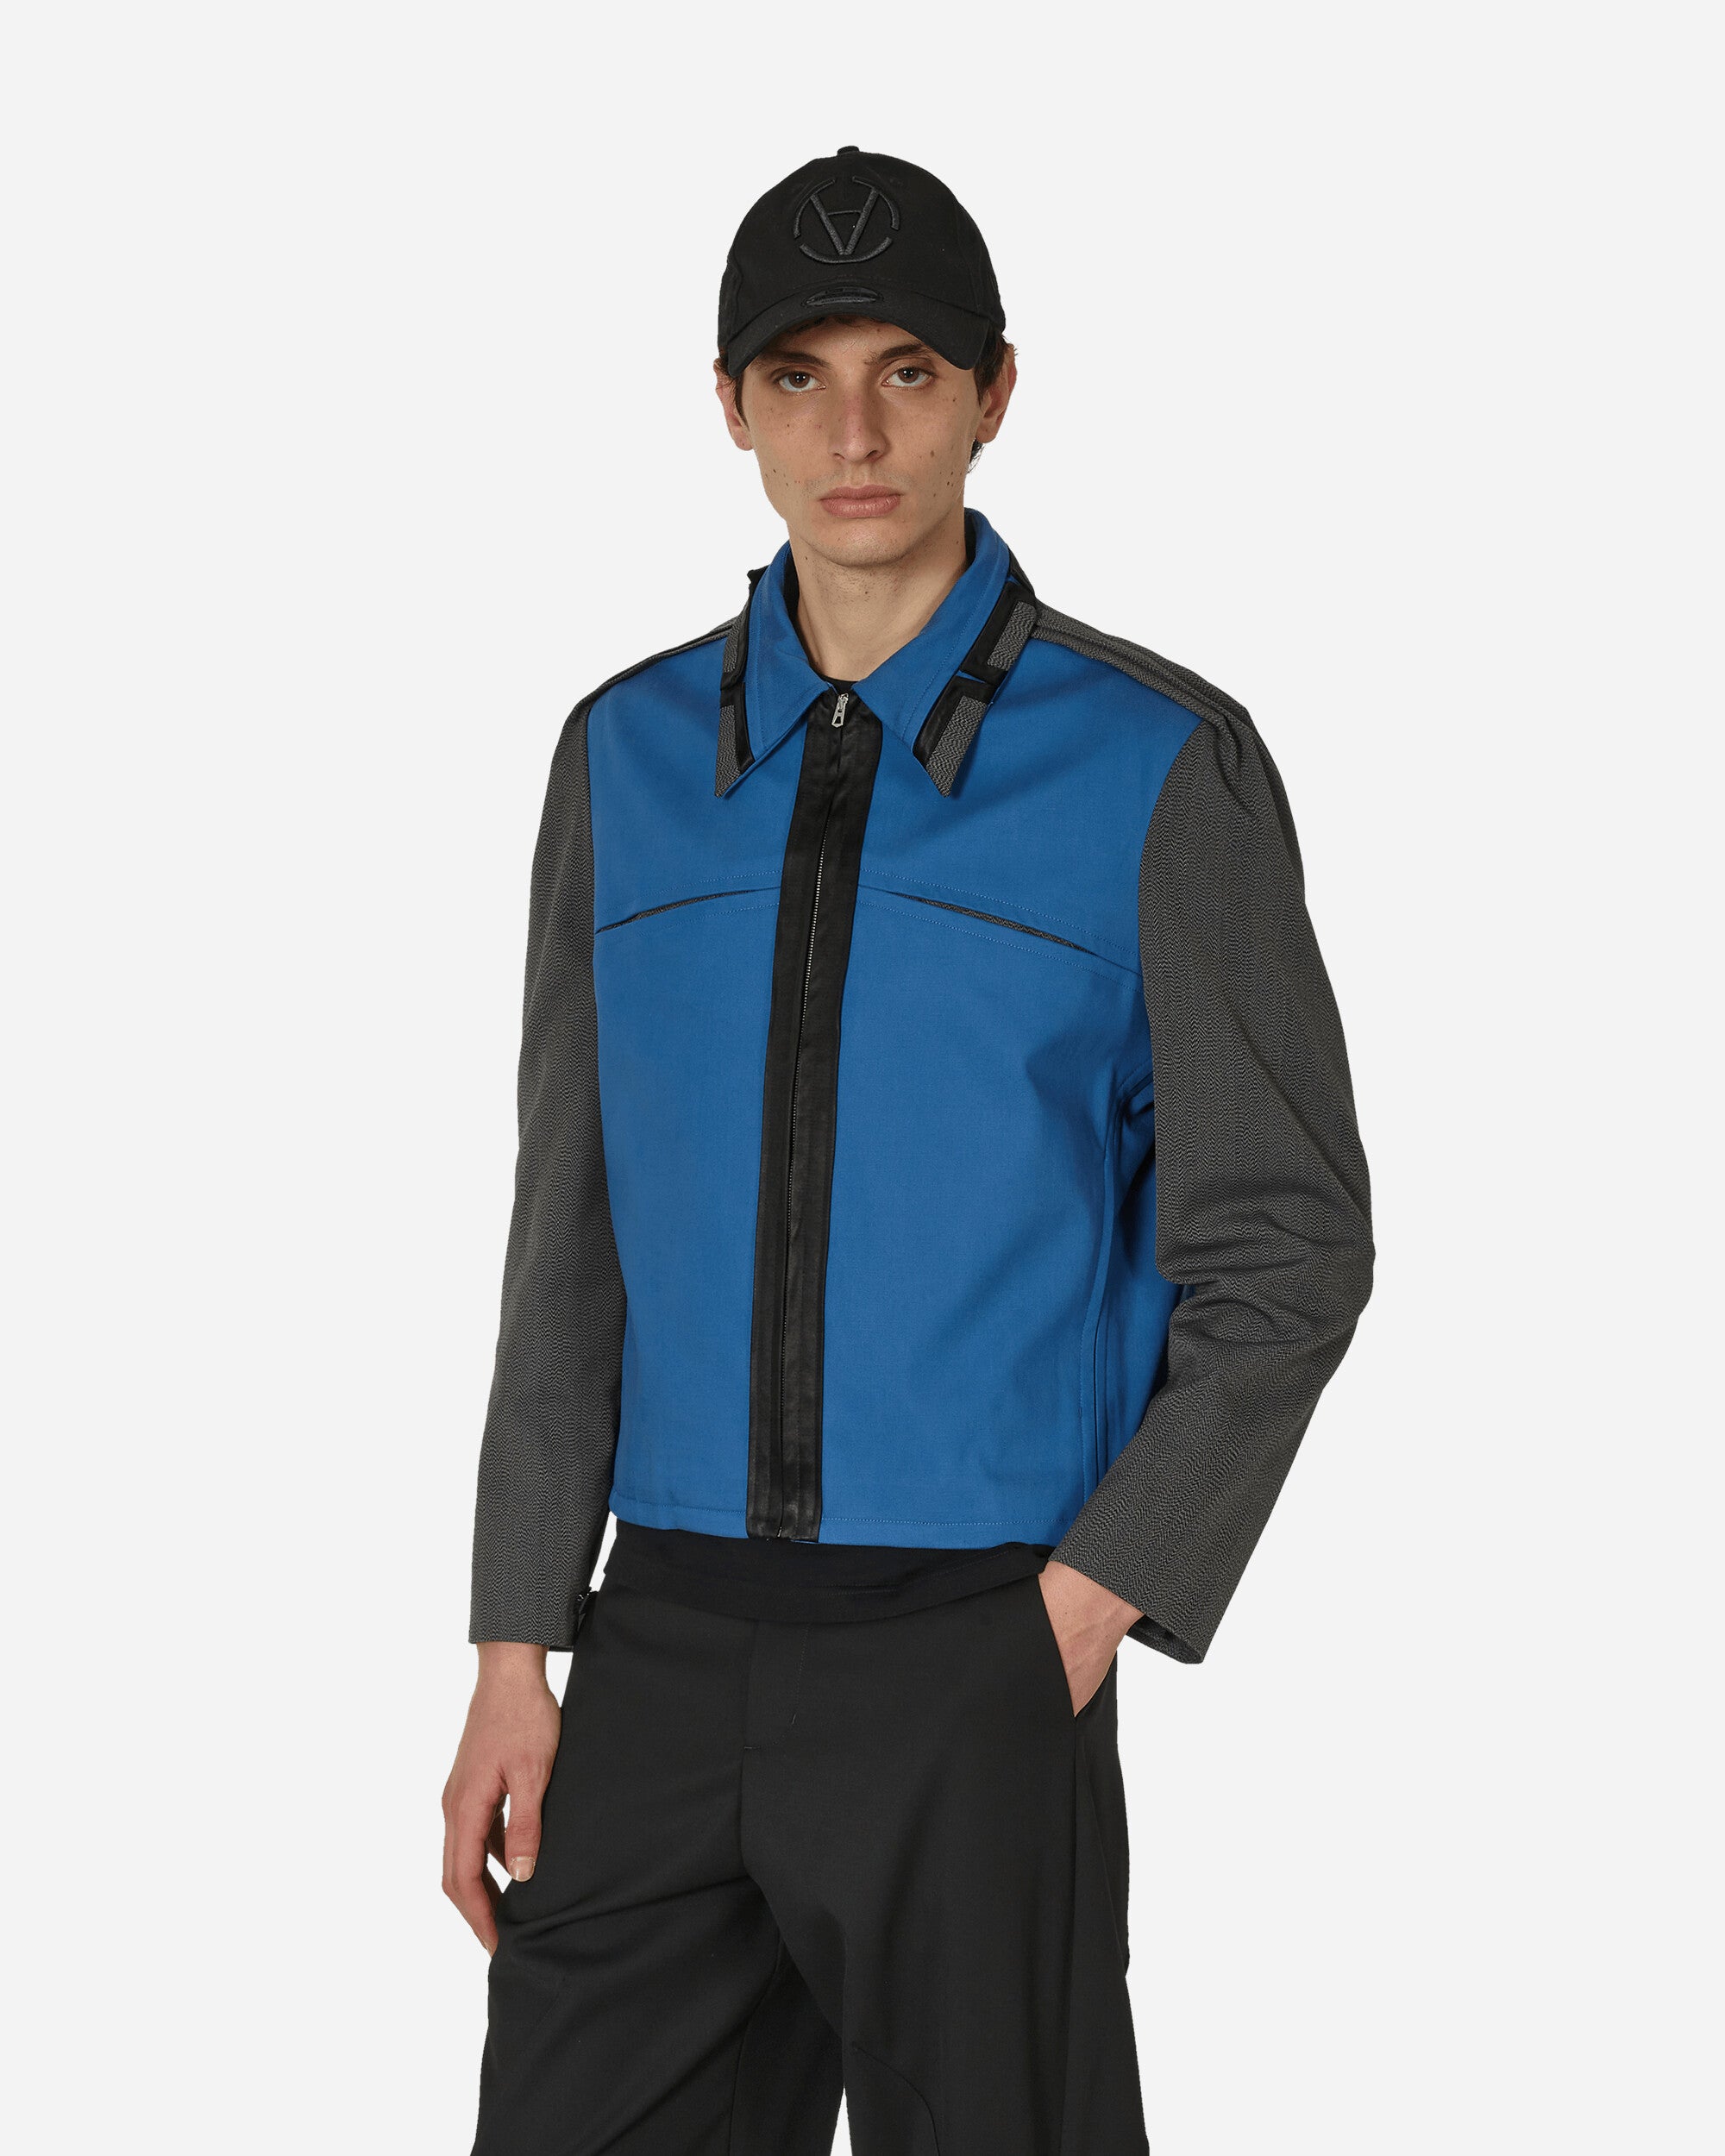 Kiko Kostadinov Ugo Blouson Azure Blue Coats and Jackets Jackets KKSS24J08 41